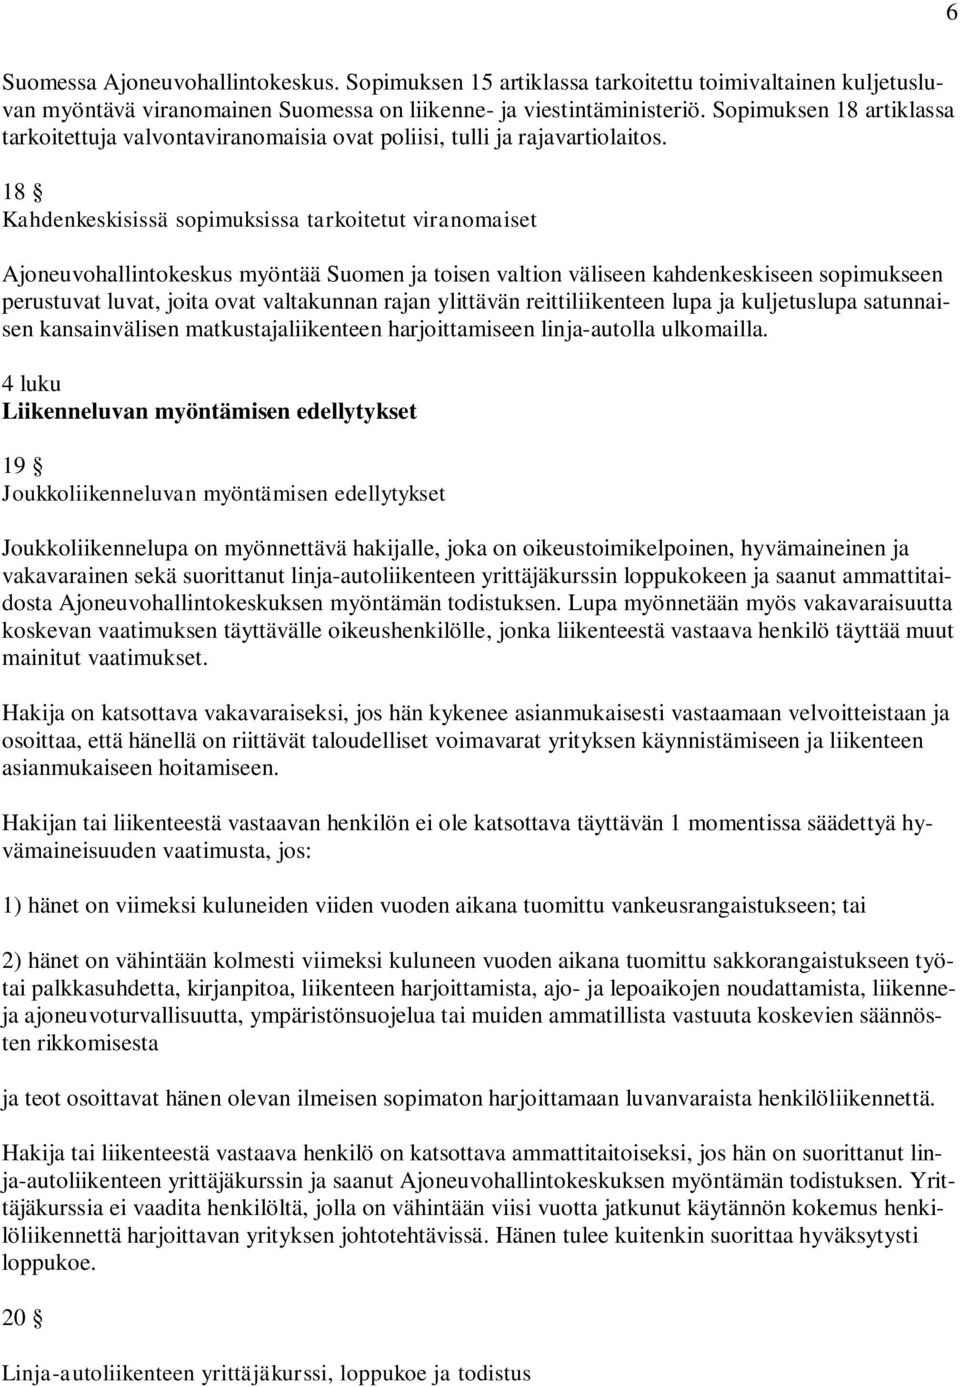 18 Kahdenkeskisissä sopimuksissa tarkoitetut viranomaiset Ajoneuvohallintokeskus myöntää Suomen ja toisen valtion väliseen kahdenkeskiseen sopimukseen perustuvat luvat, joita ovat valtakunnan rajan